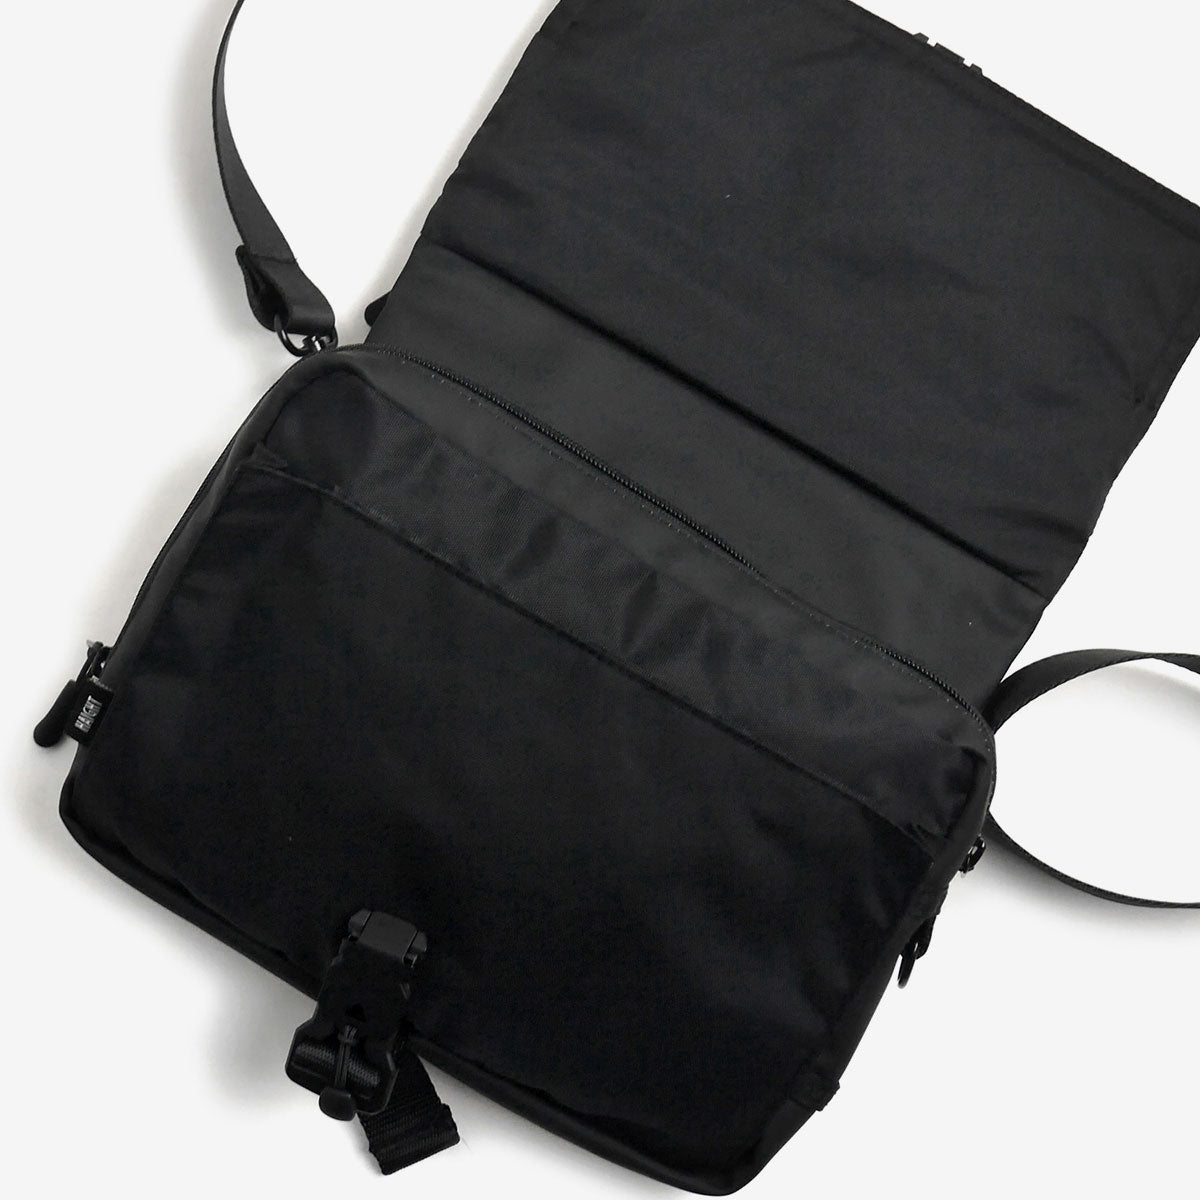 Hybrid Shoulder Bag